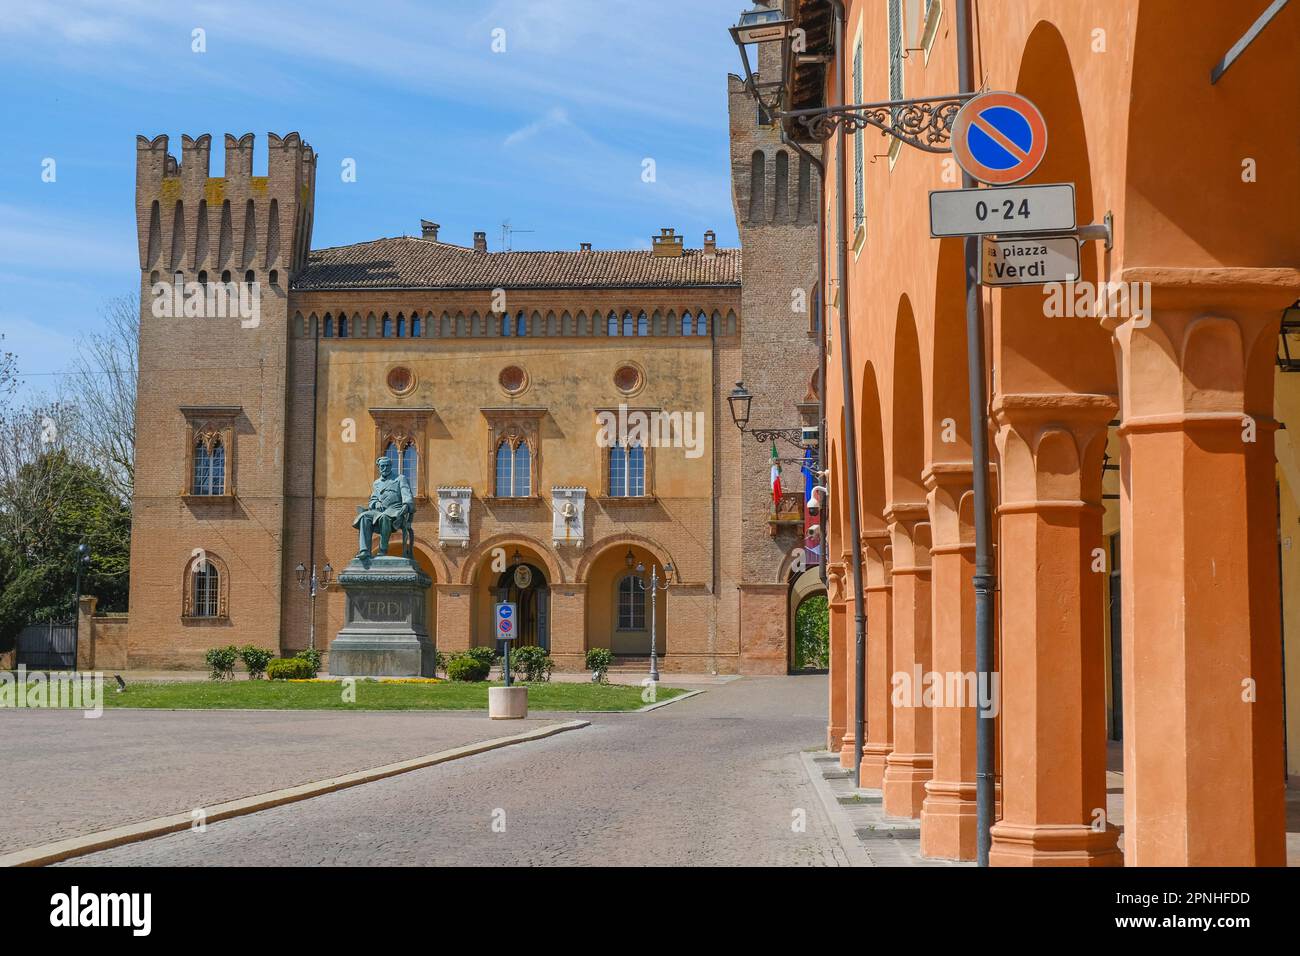 Place de Giuseppe Verdi en face du bâtiment du théâtre et de la tour de l'horloge à Busseto, Italie Banque D'Images